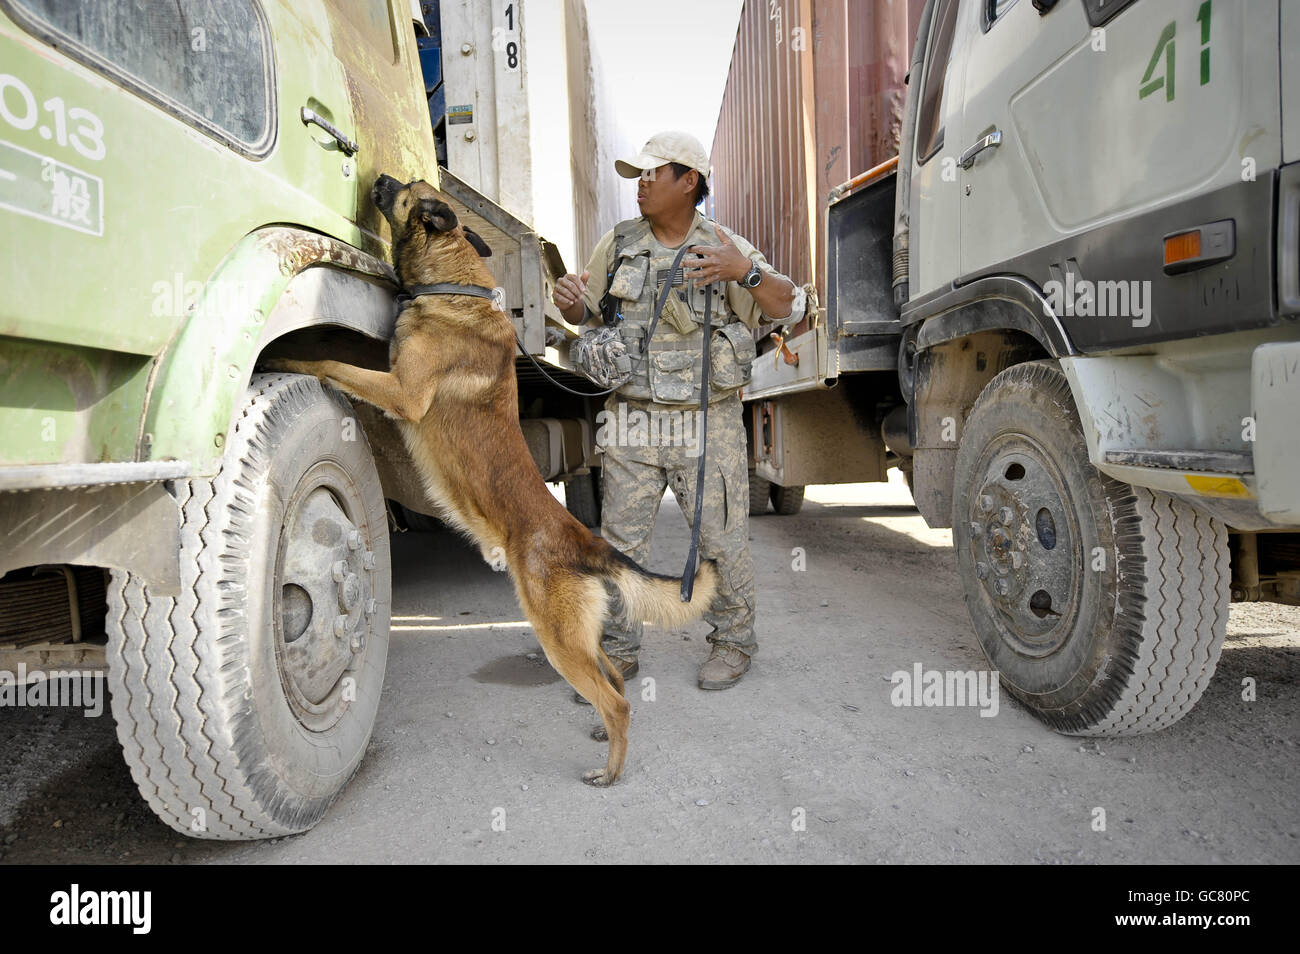 Braum le chien belge de détection de la bombe malinois encourt des camions afghans avec son maître Adel Briones près d'un point de contrôle de véhicule sur l'aérodrome de Kandahar, province de Kandahar, Afghanistan. Banque D'Images